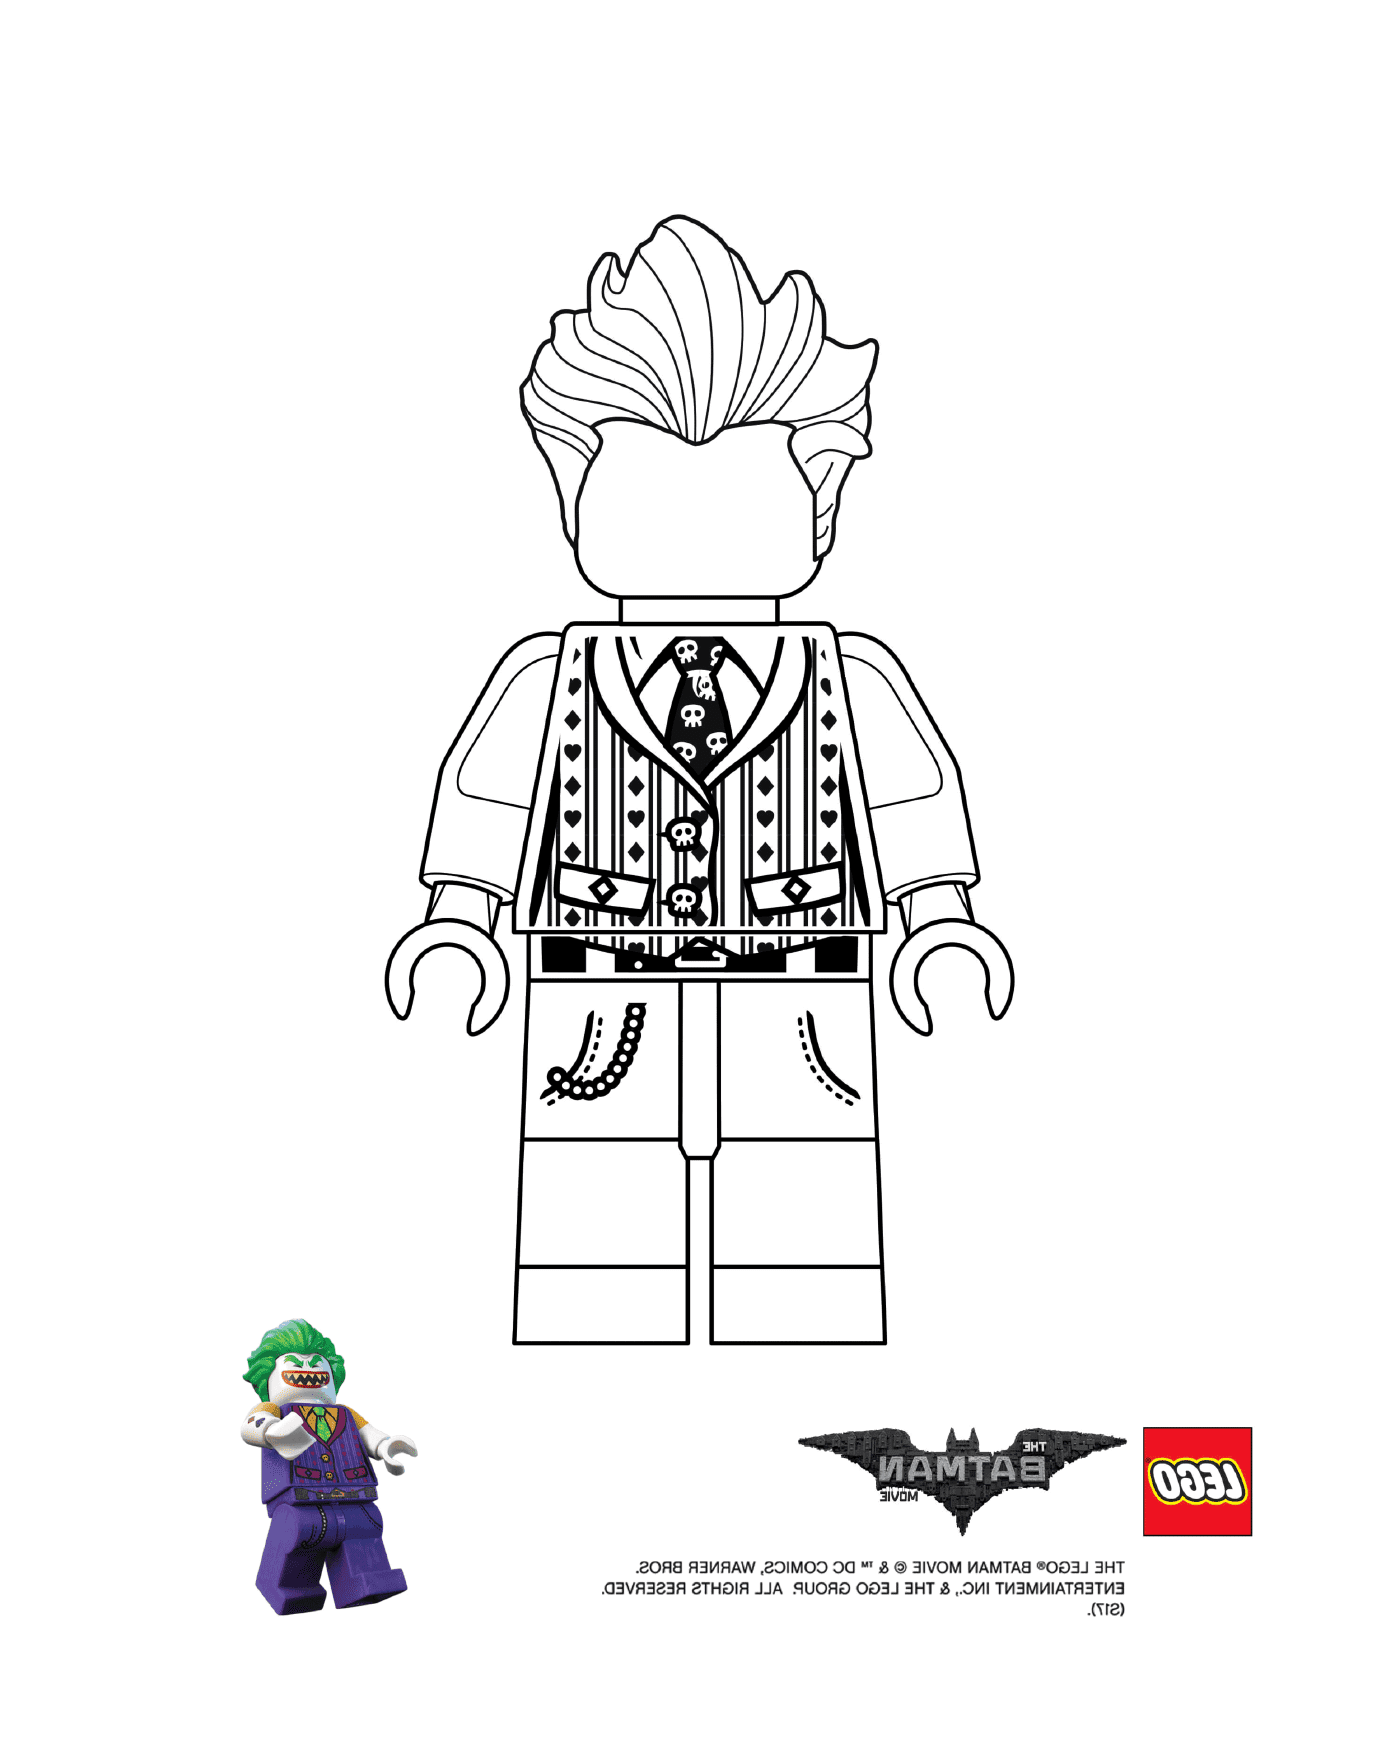   Joker Lego du film Lego Batman 